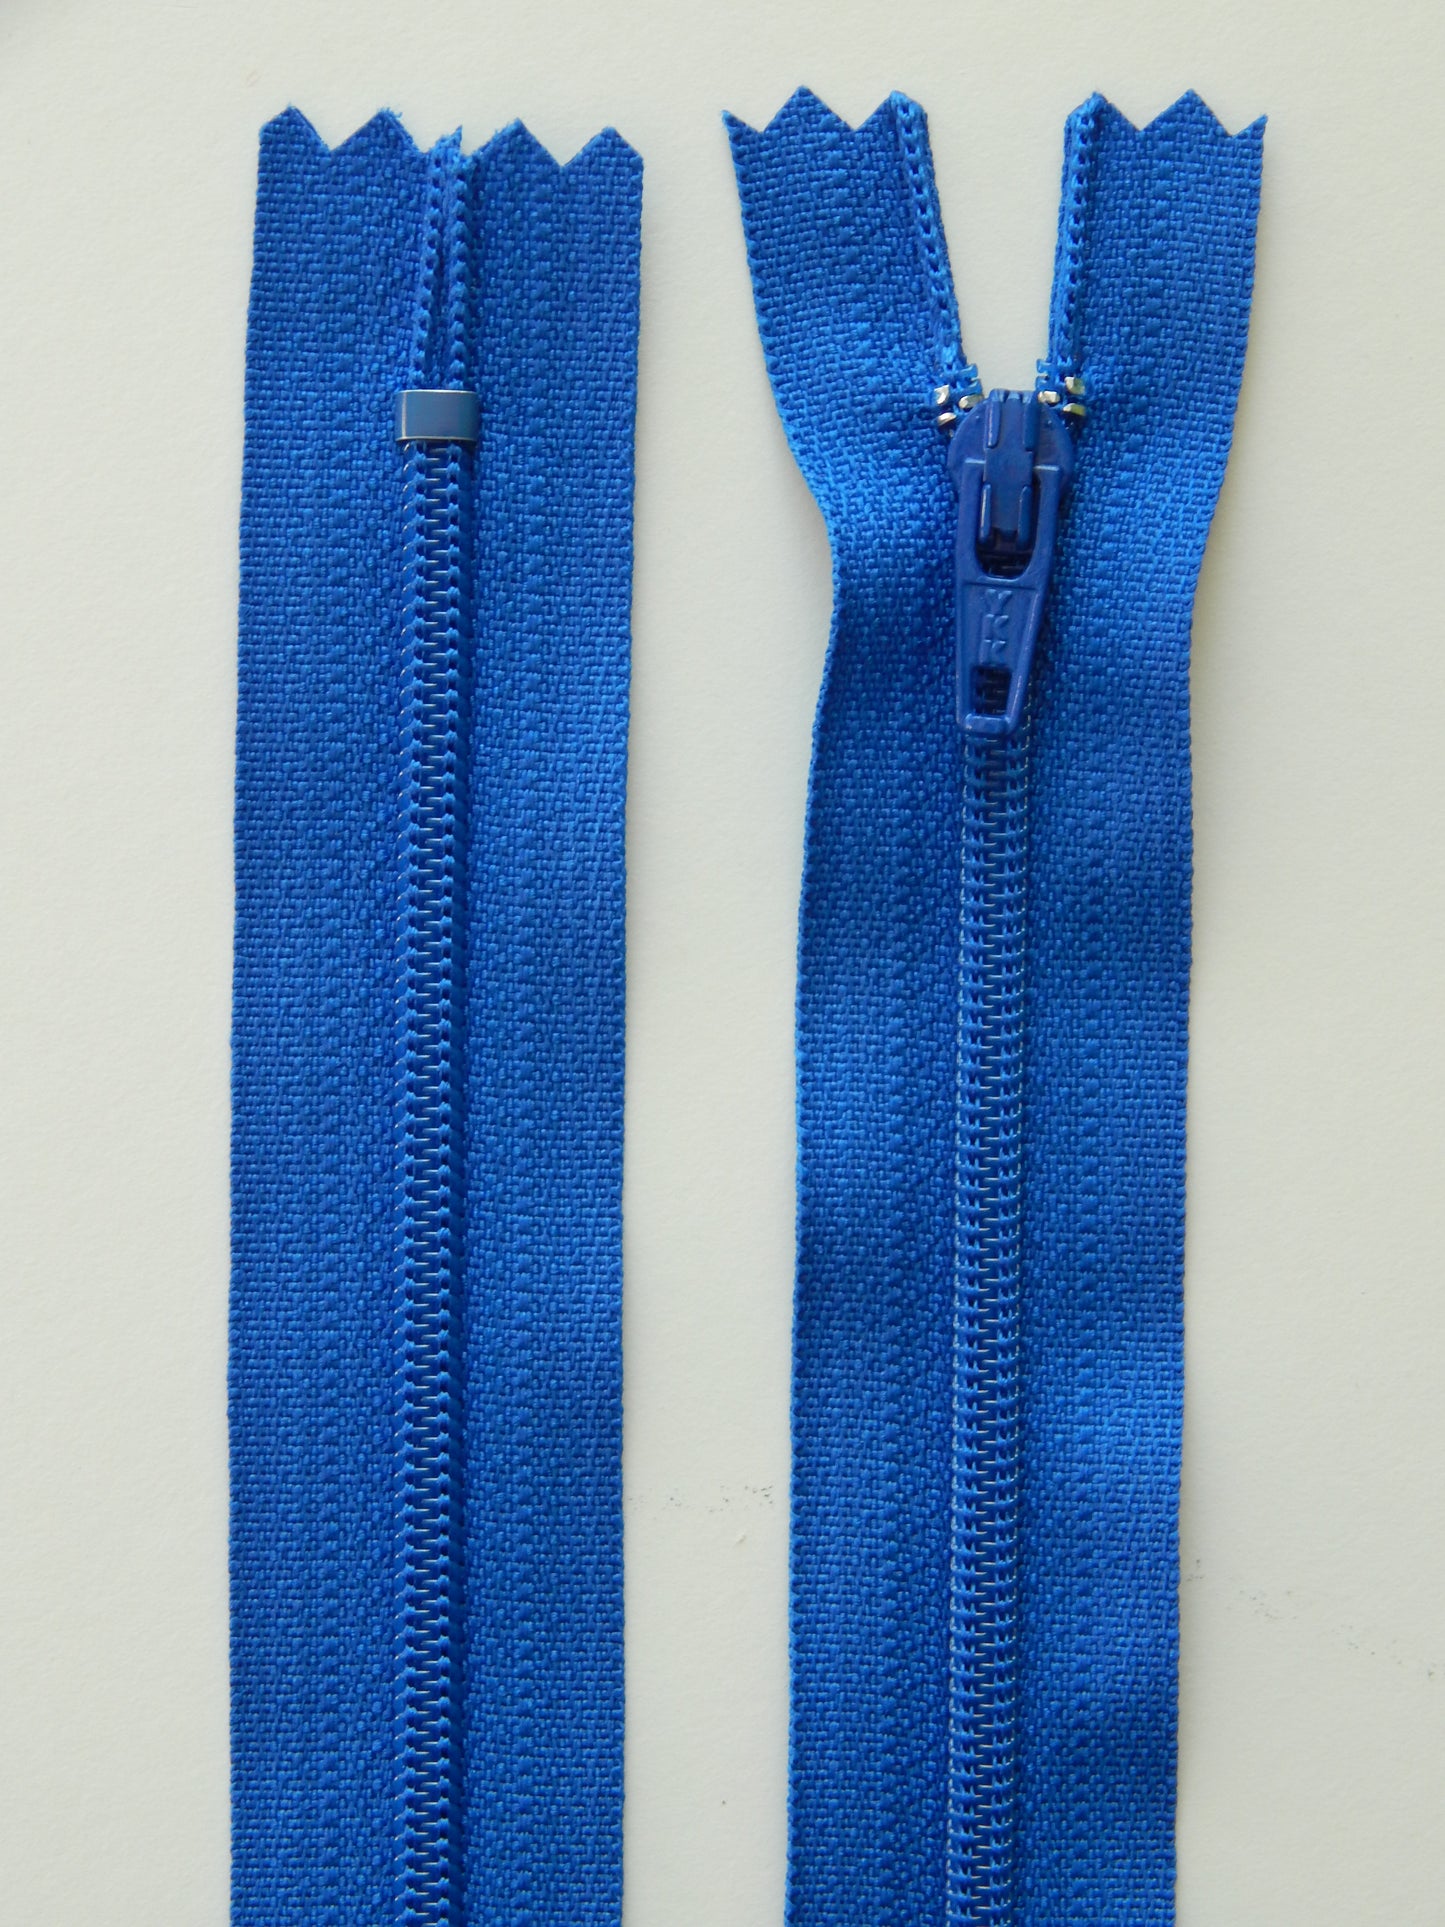 bright blue plastic nonseparating skirt zipper